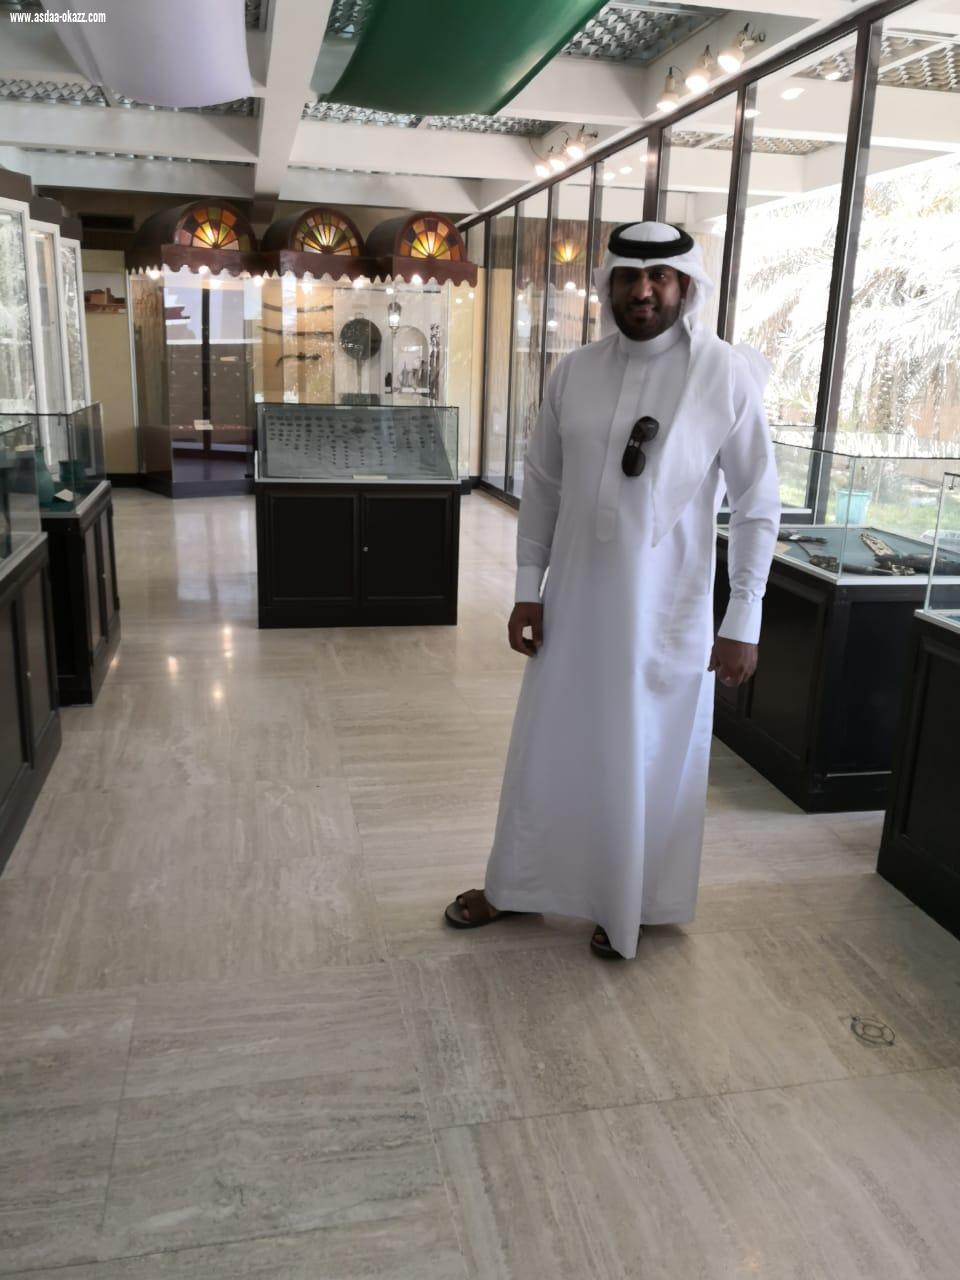 سعادة السفير د عبدالله البطيان  في زيارة لمدير فرع هيئة السياحة والآثار بالأحساء